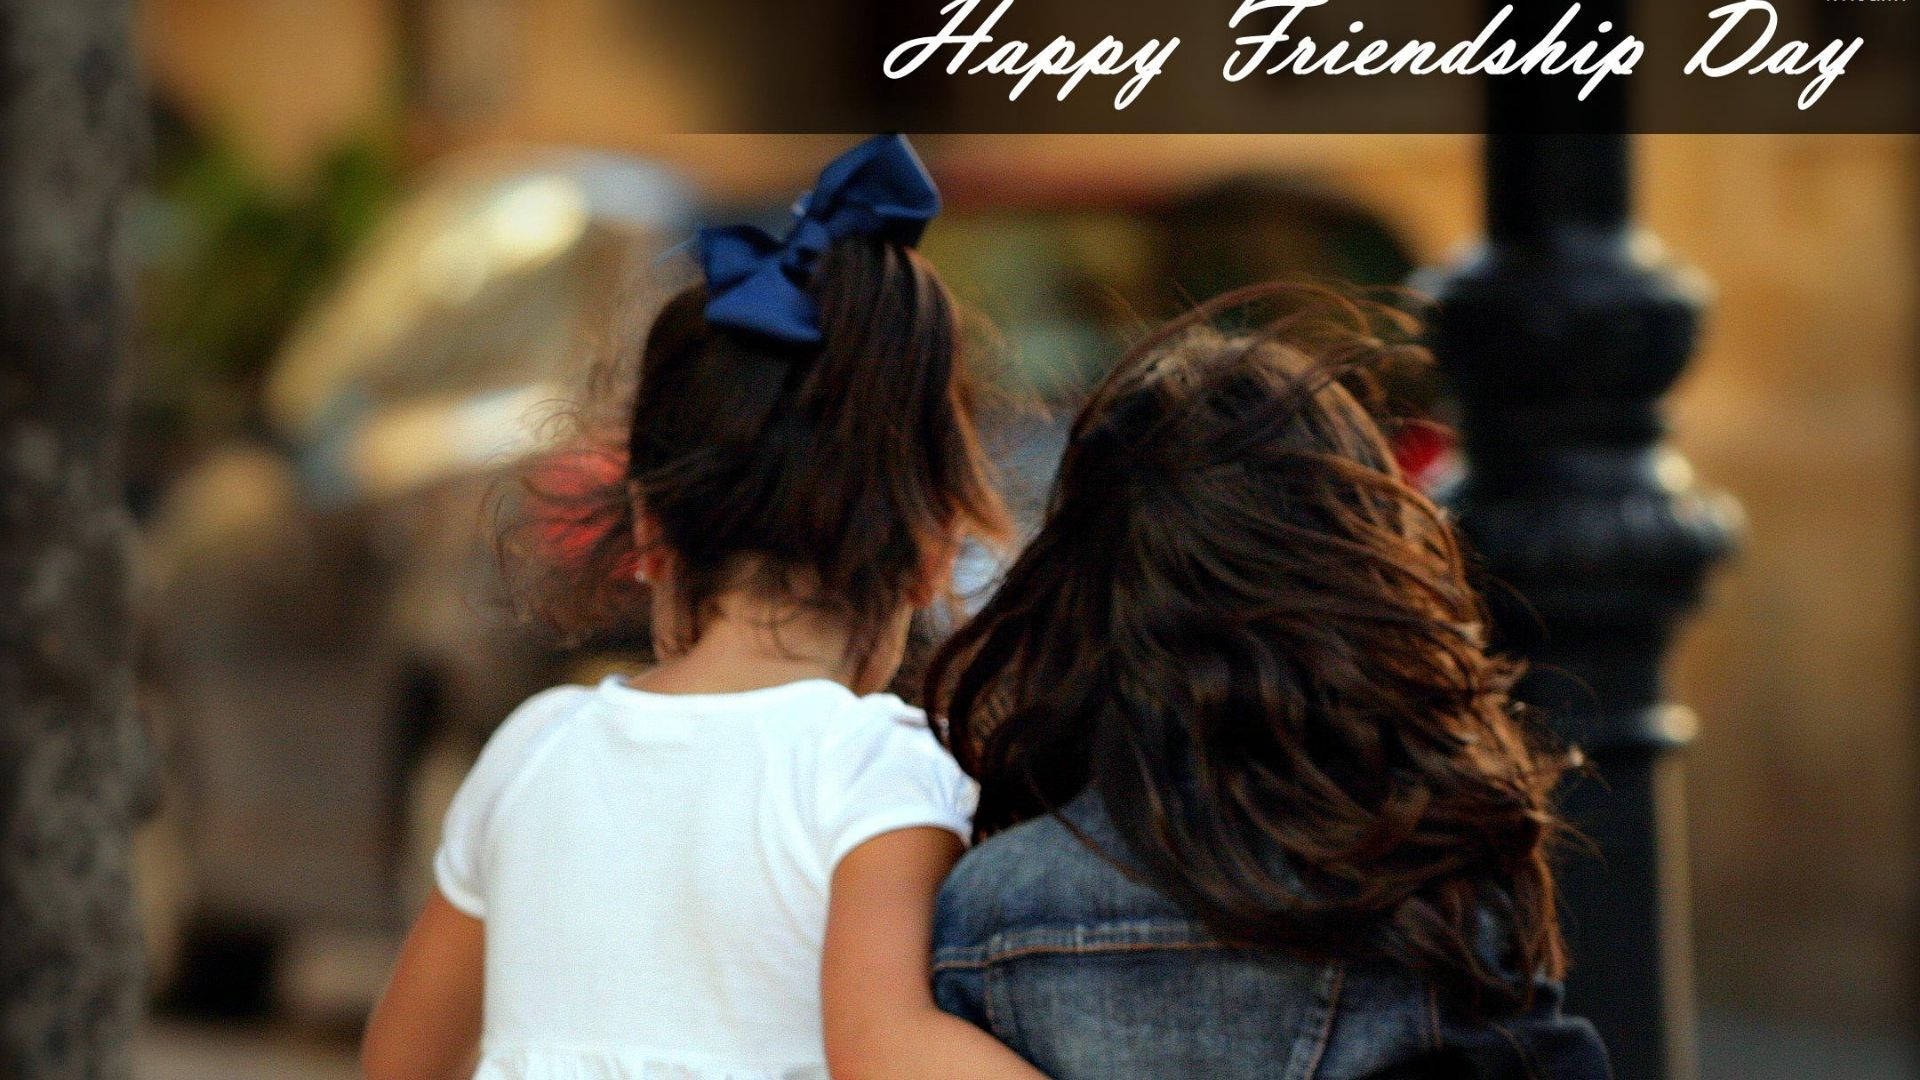 Girls Walking On Friendship Day Background